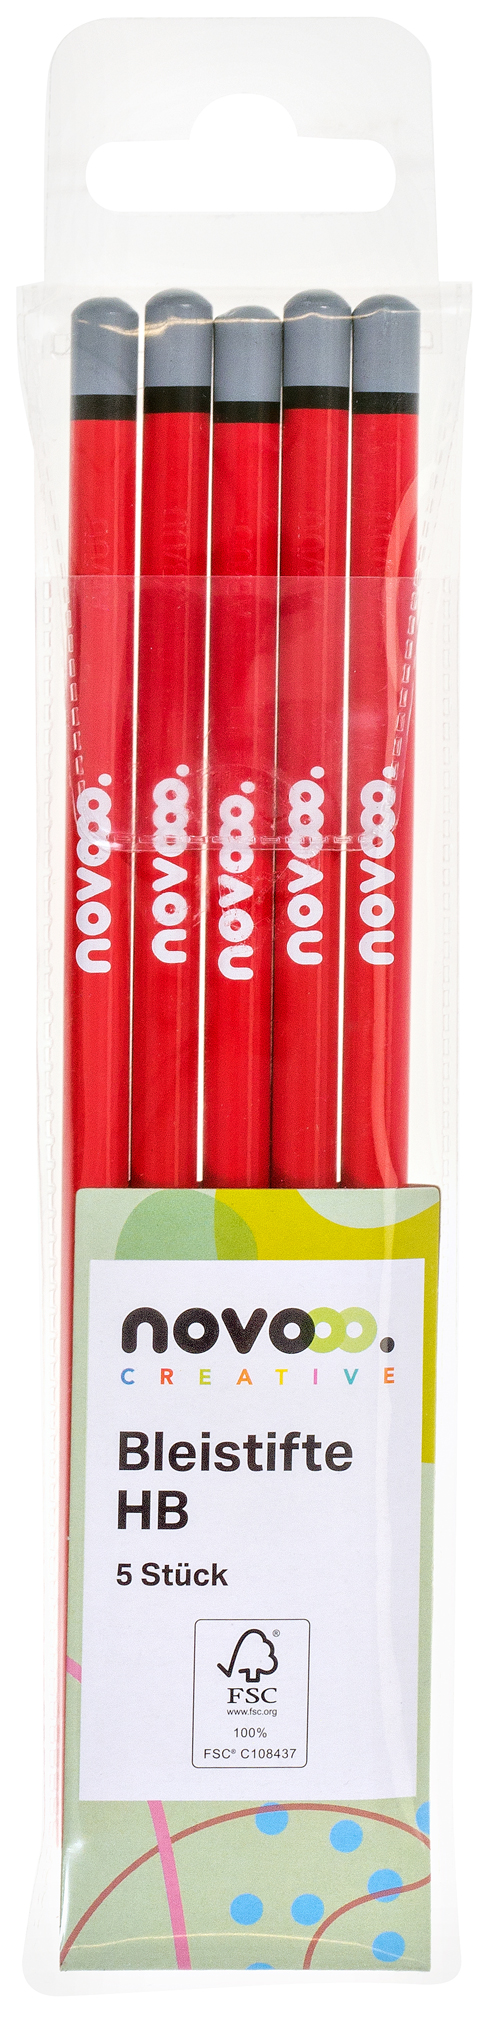 NOVOOO Creative Bleistifte HB 5 Stück rot lackiert